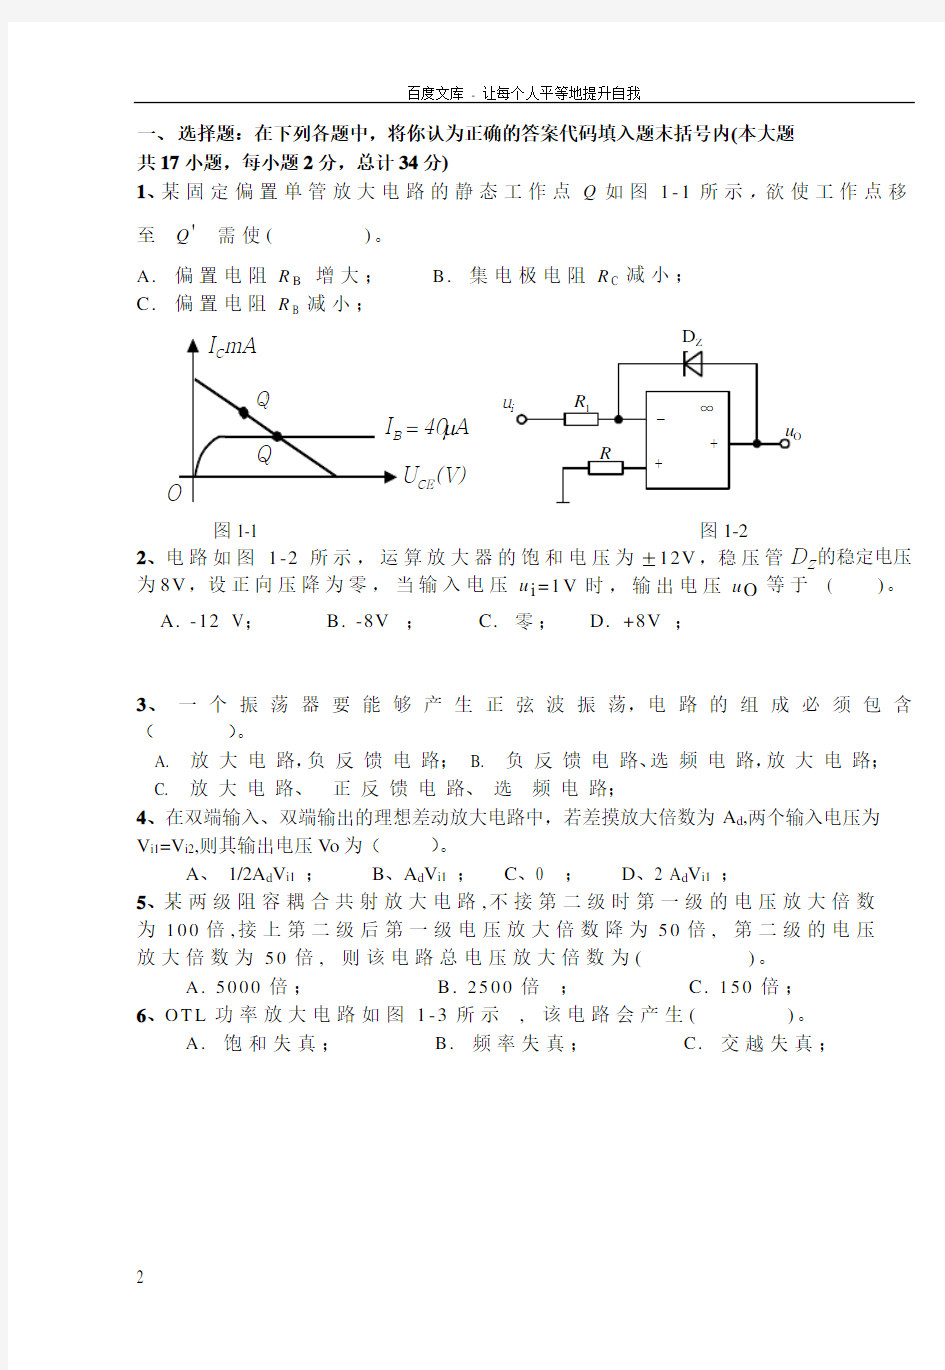 广西大学模拟电路课程考试试卷1